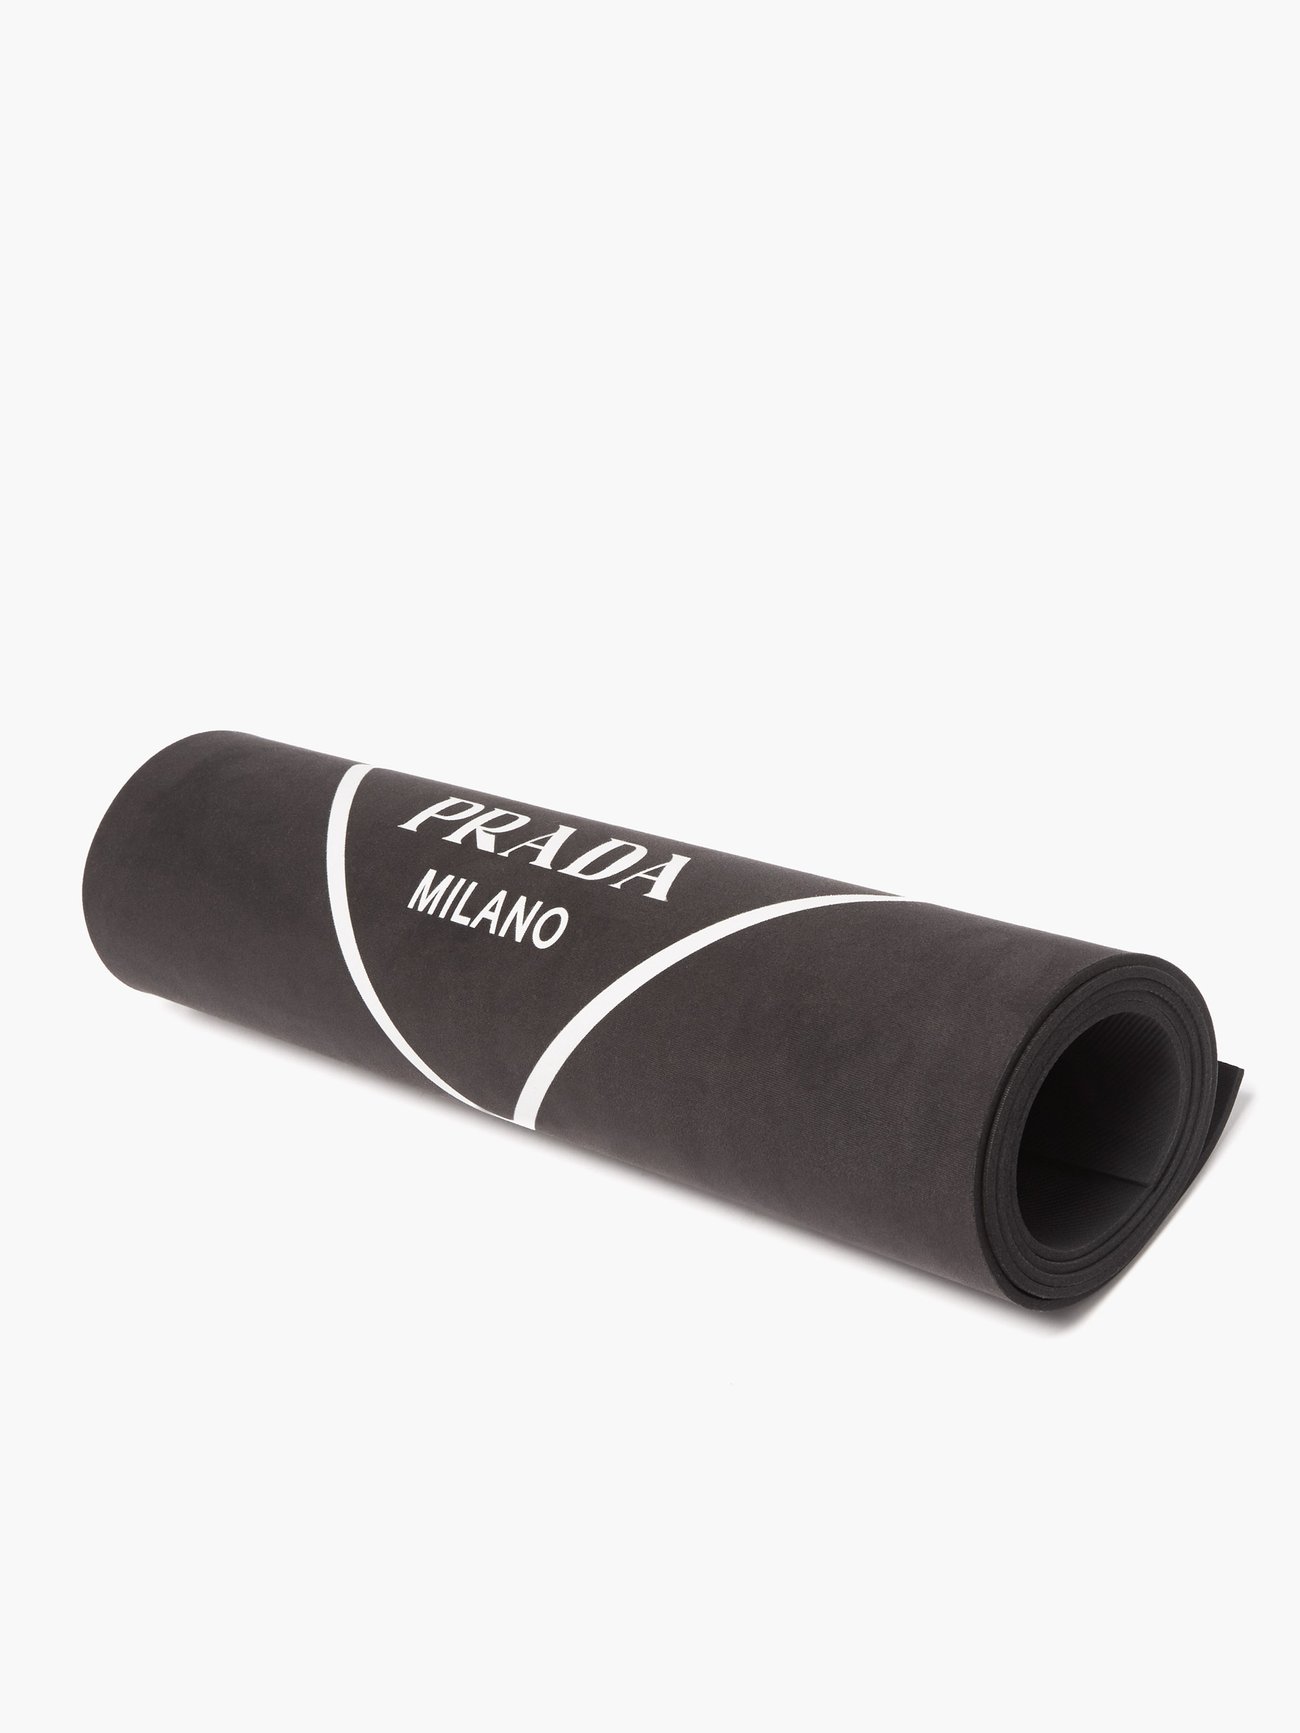 Logo Print Yoga Mat in Black Prada